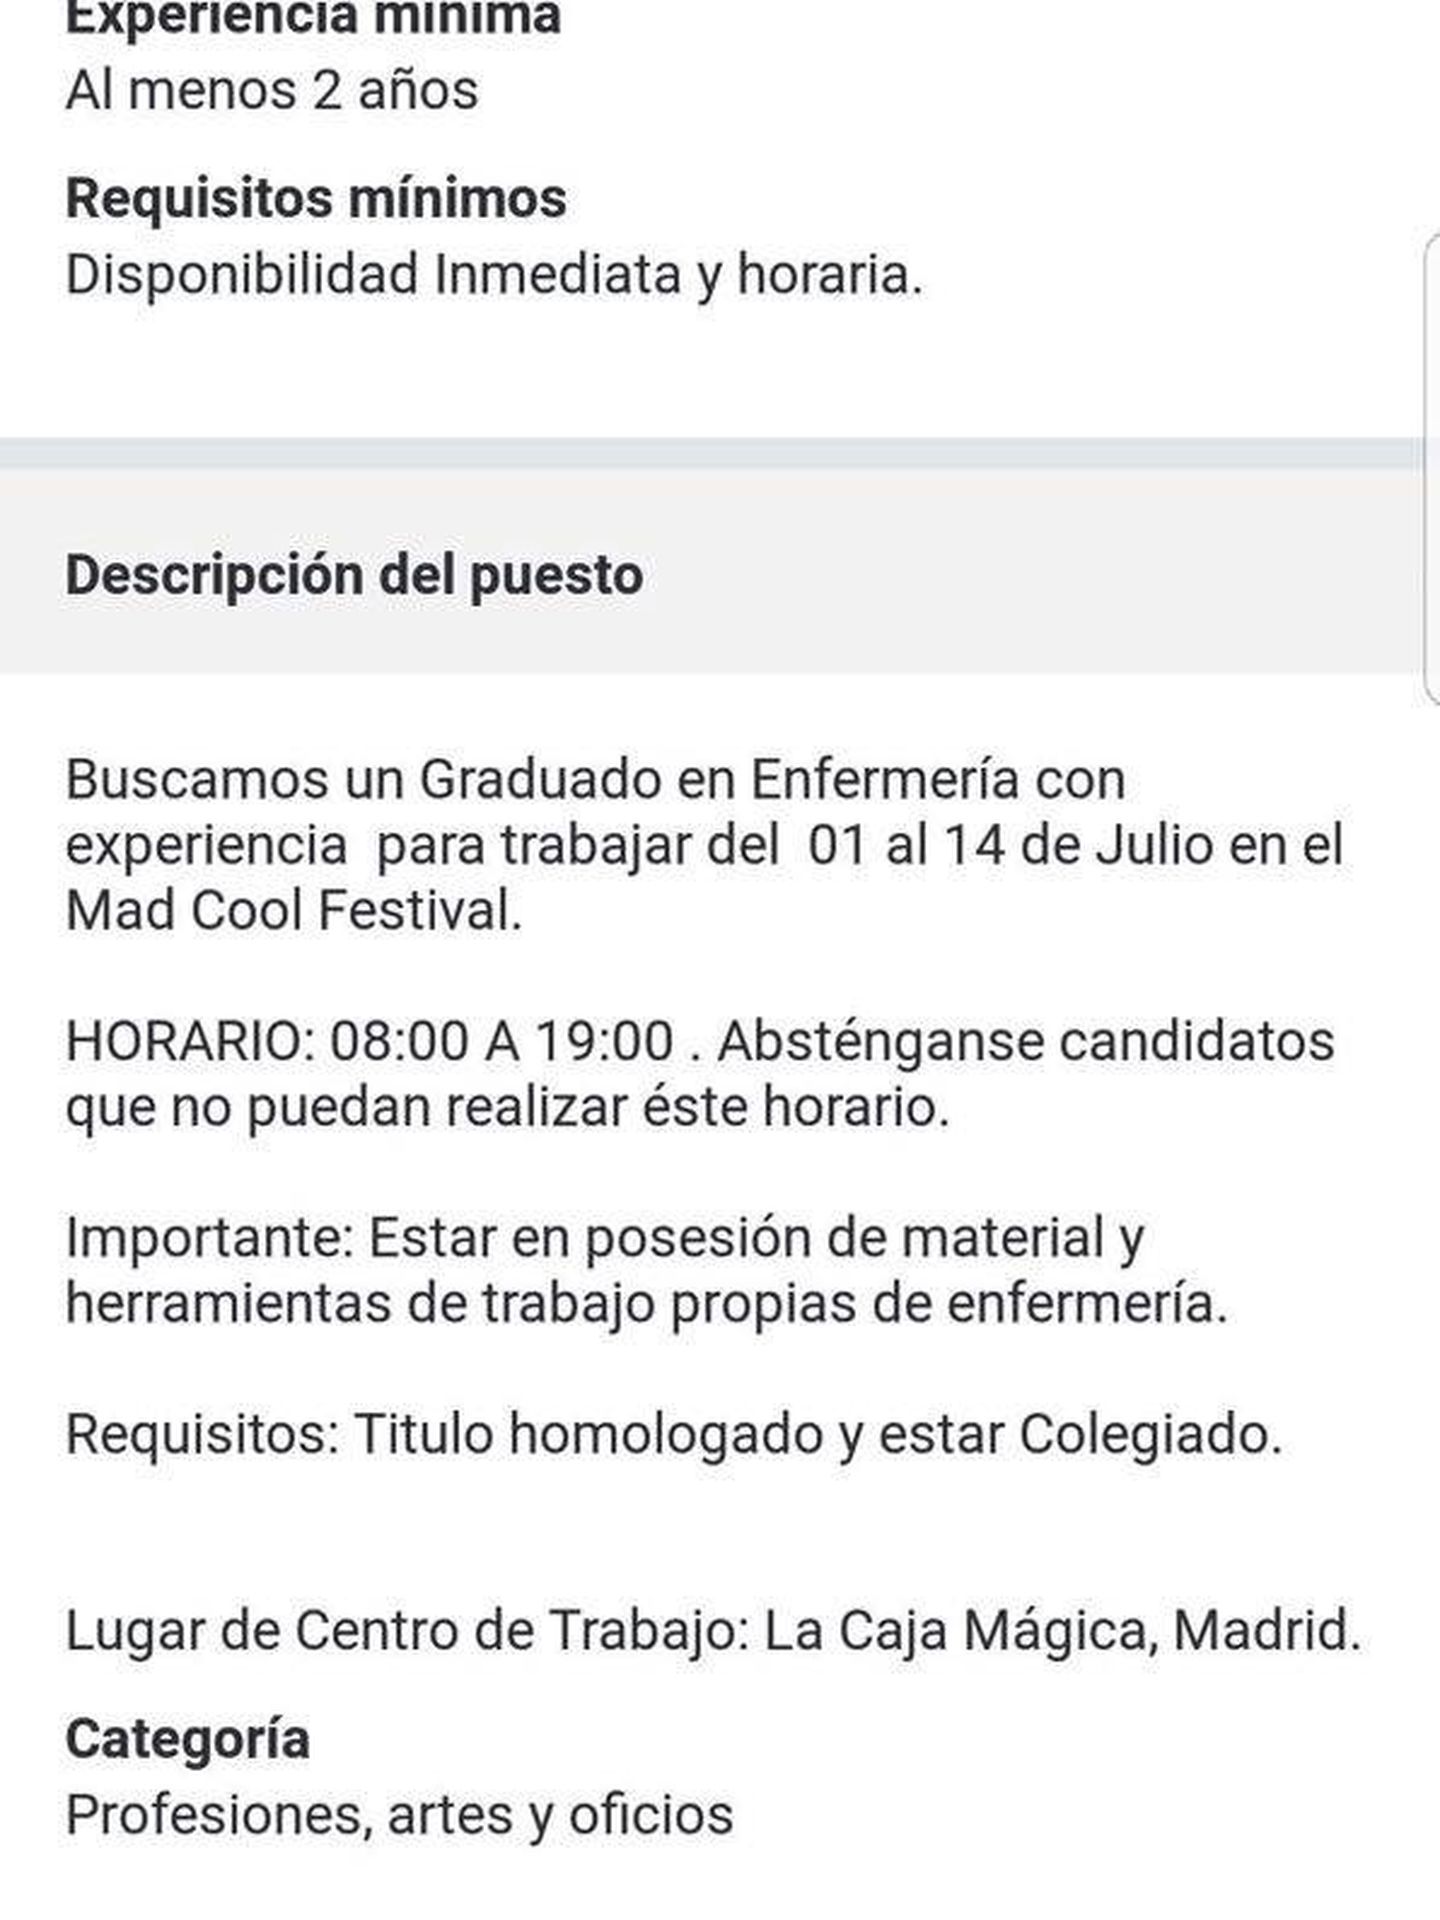 Polémica oferta de empleo del Mad Cool Festival.